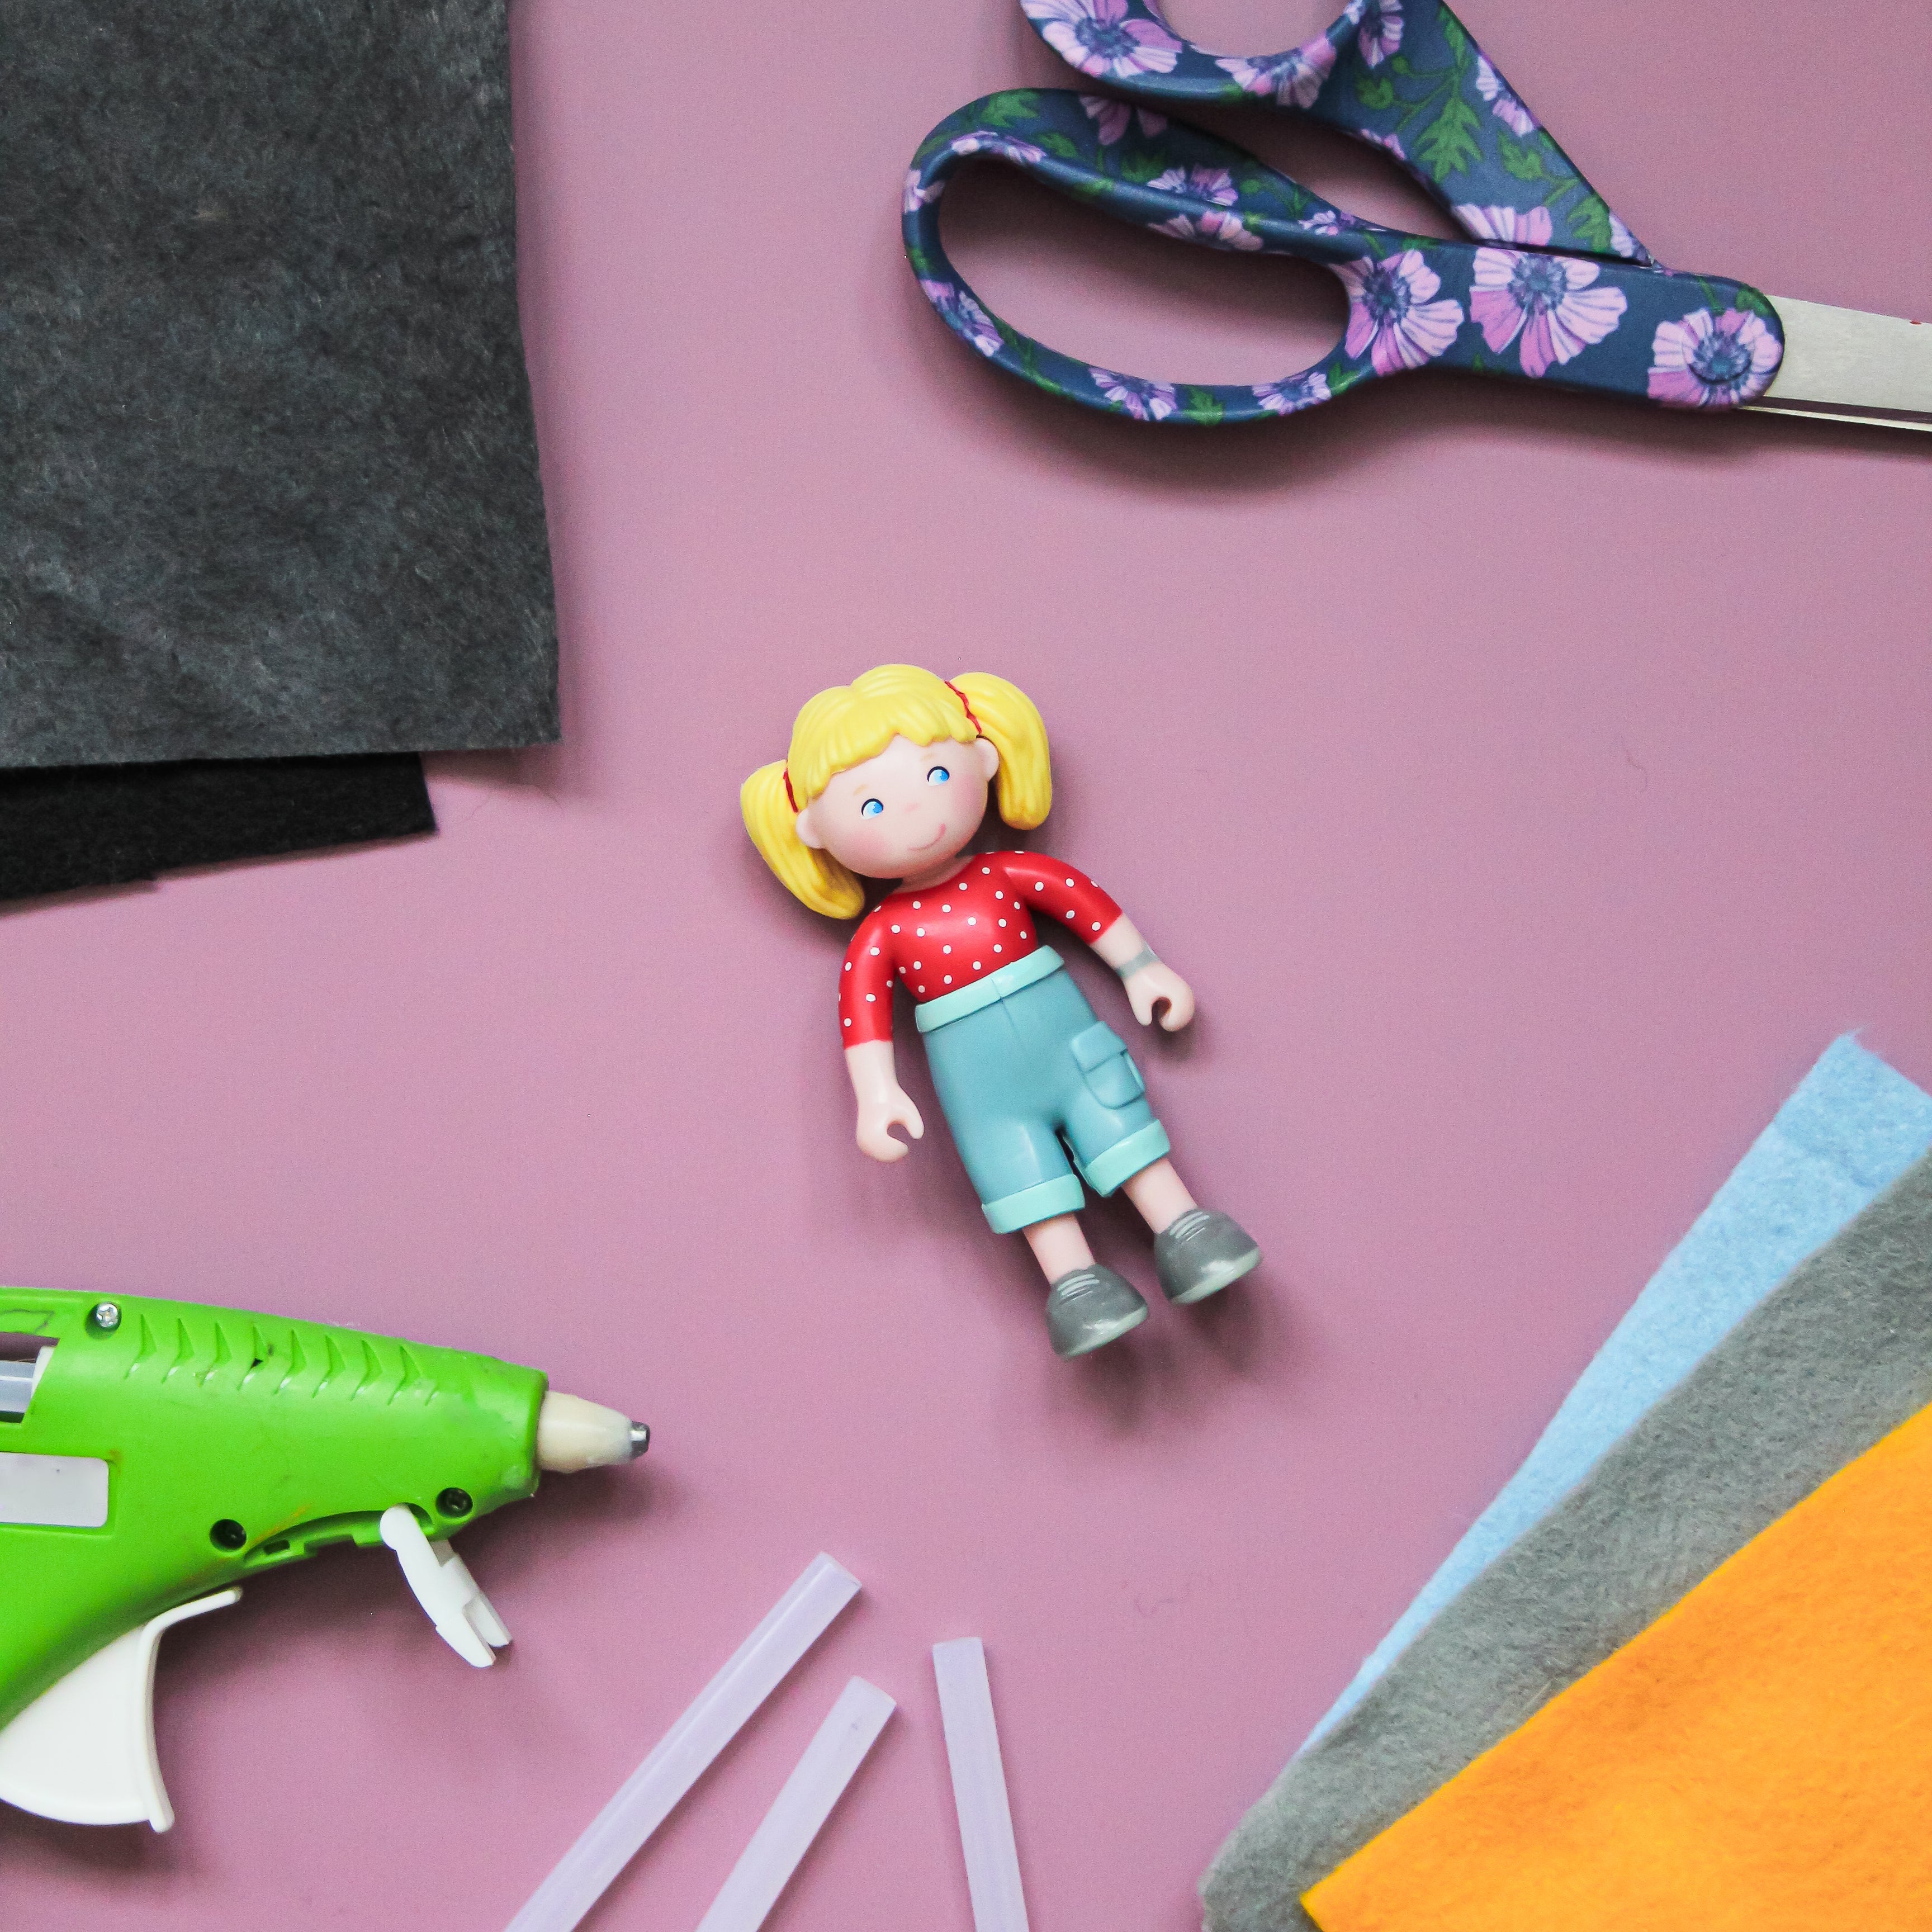 Une poupée Little Friends se trouve au milieu de feutre, d'un bâton de colle et de ciseaux sur un fond mauve clair.